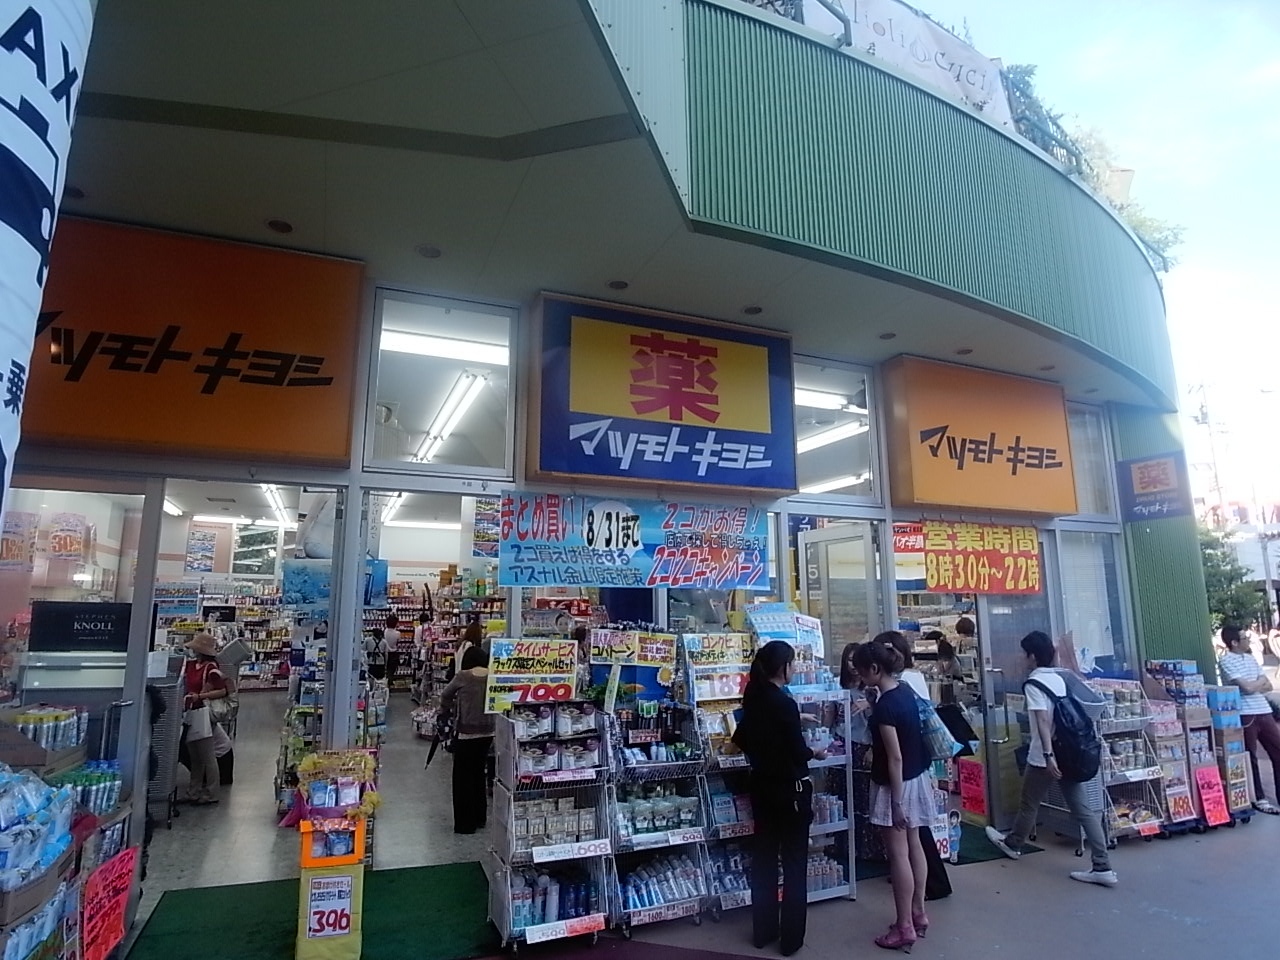 Dorakkusutoa. Matsumotokiyoshi Arsenal Jinshan shop 320m until (drugstore)